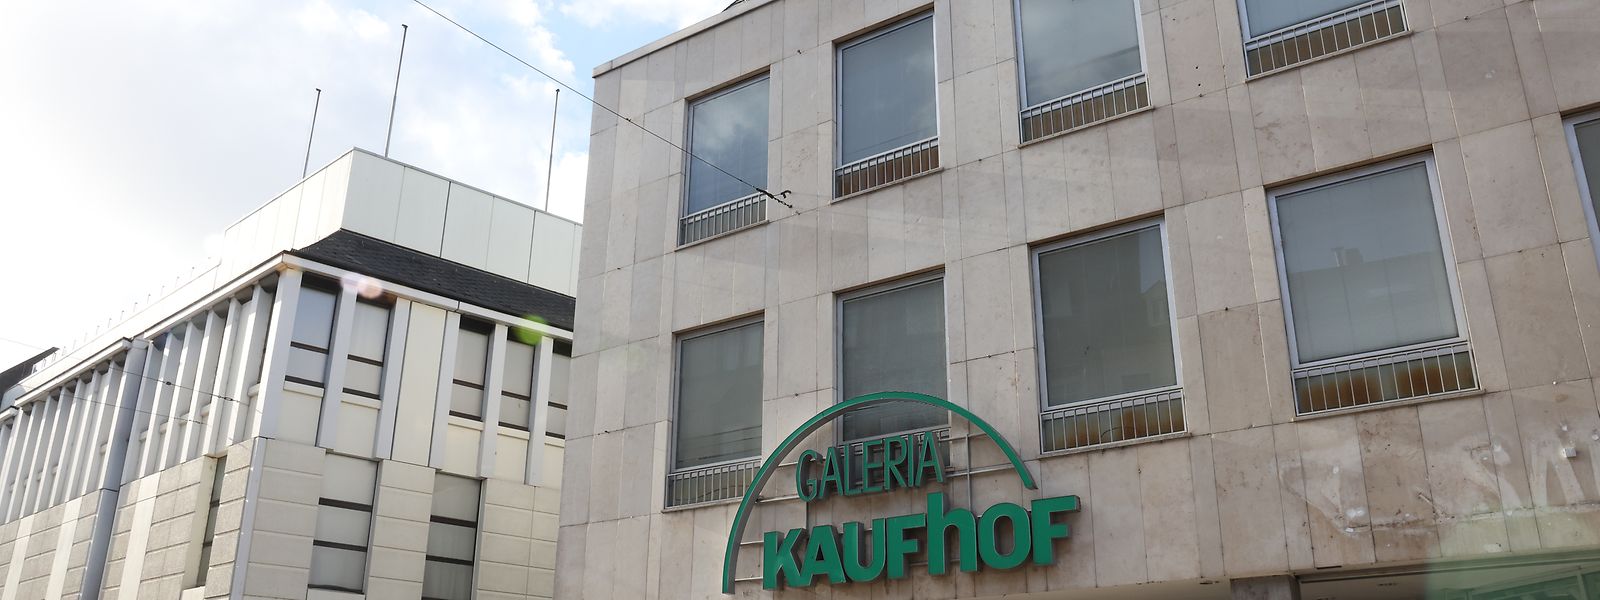 Der Warenhauskonzern Galeria Karstadt Kaufhof steht auch auf der Liste der Sanierungsfälle des laufenden Jahres.